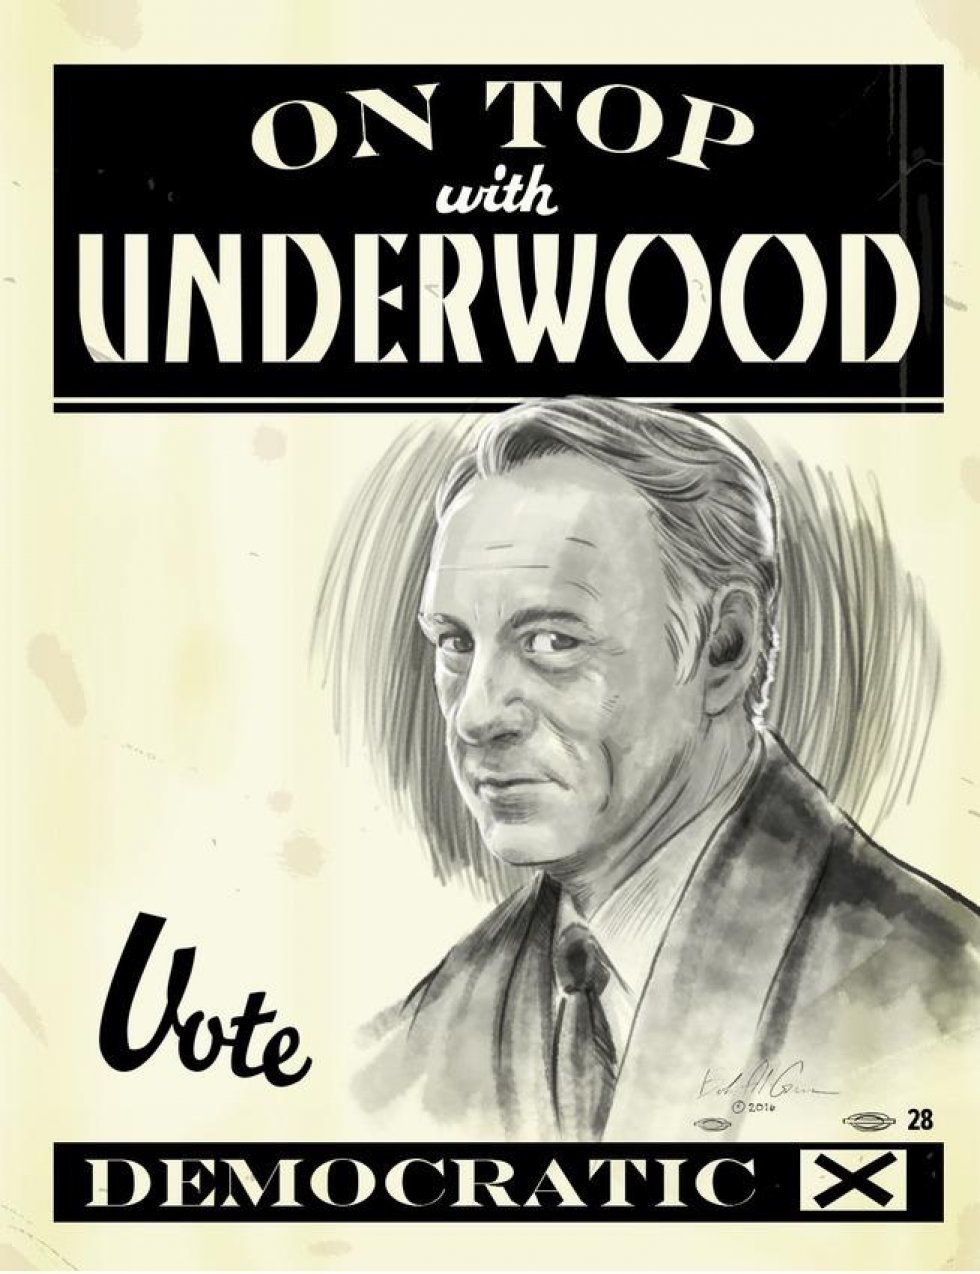 Frank Underwood for president